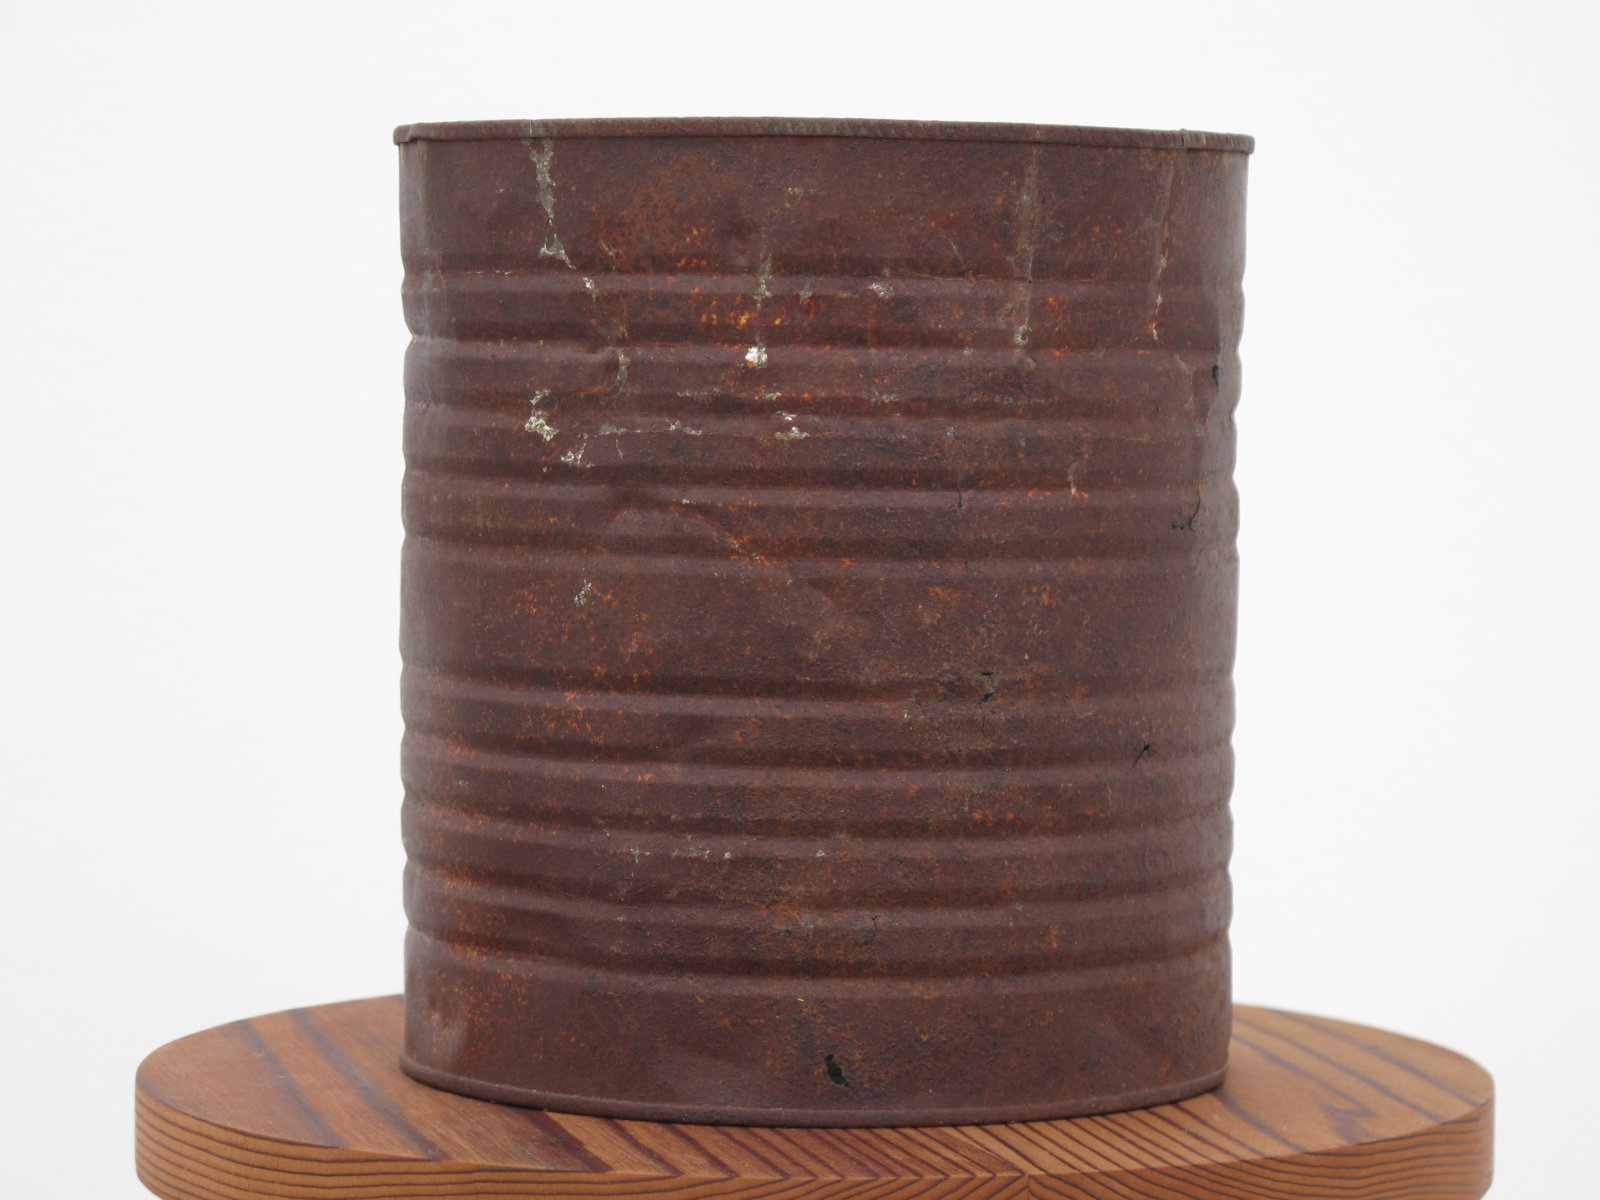 Ashes Withyman, WTsi-00f (detail), 2014, tin, silver leaf, cedar, 10 x 10 in. (25 x 25 cm)